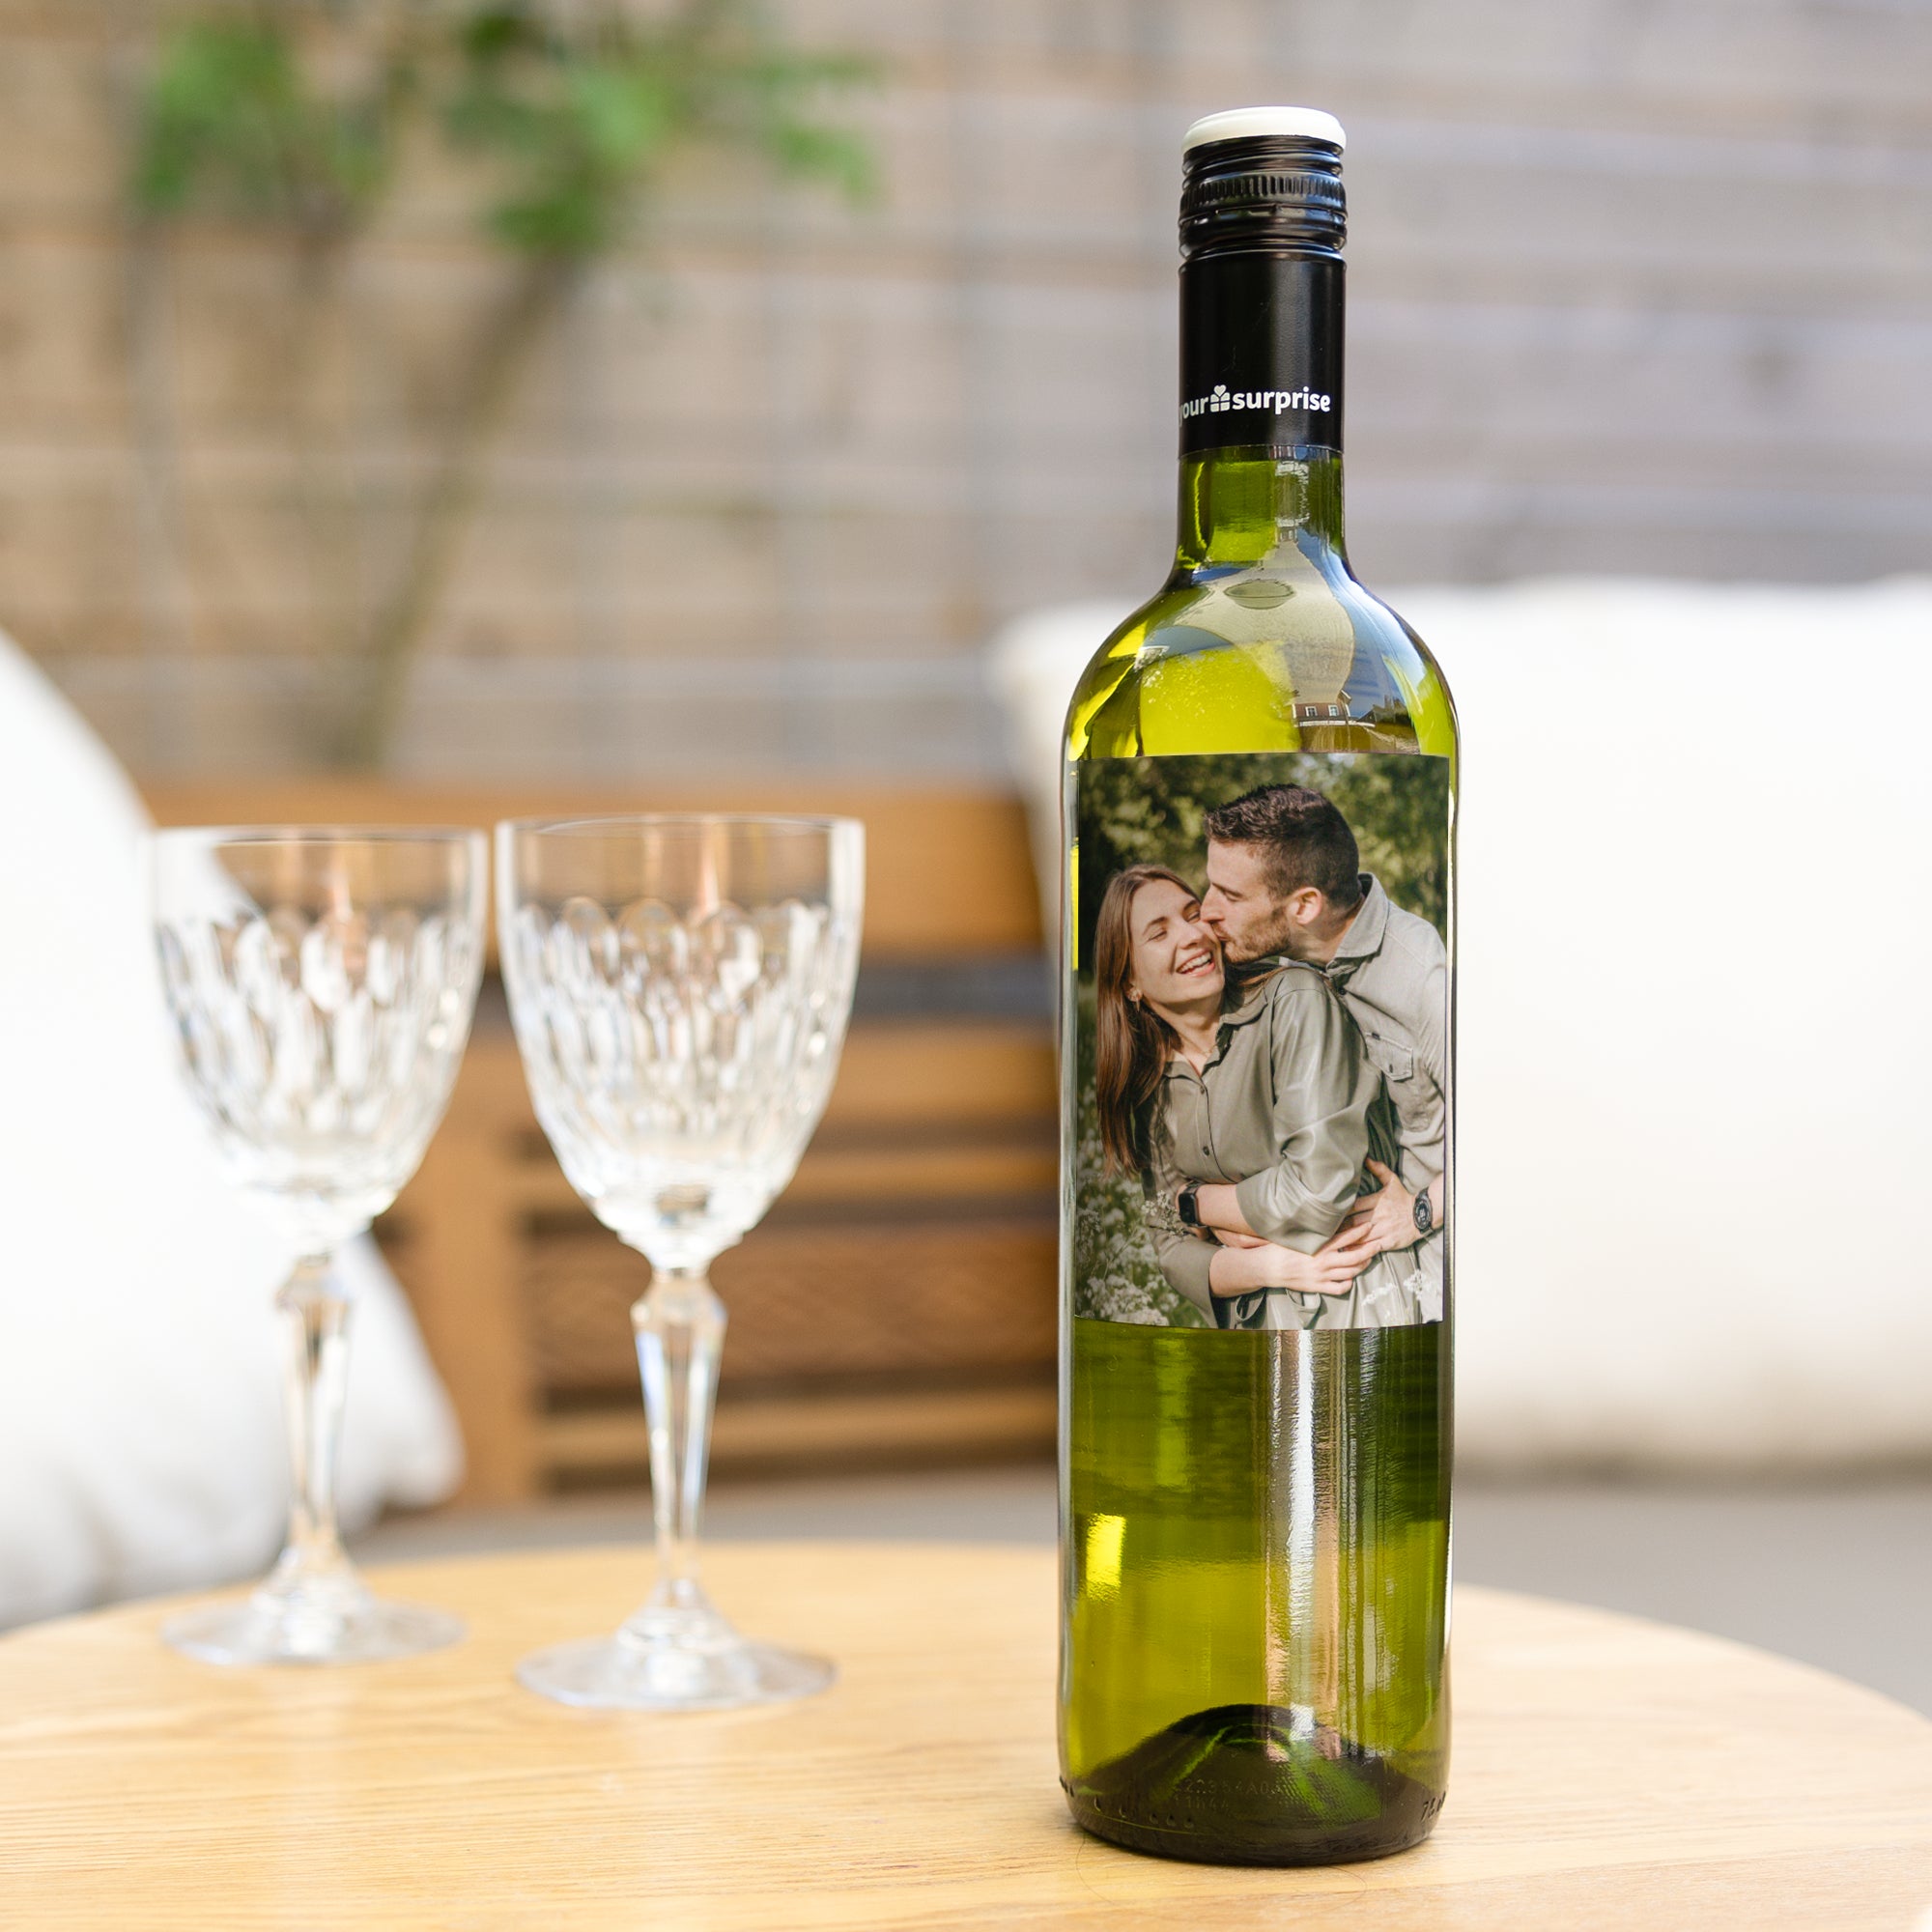 Wine with personalised label - Maison de la Surprise - Sauvignon Blanc